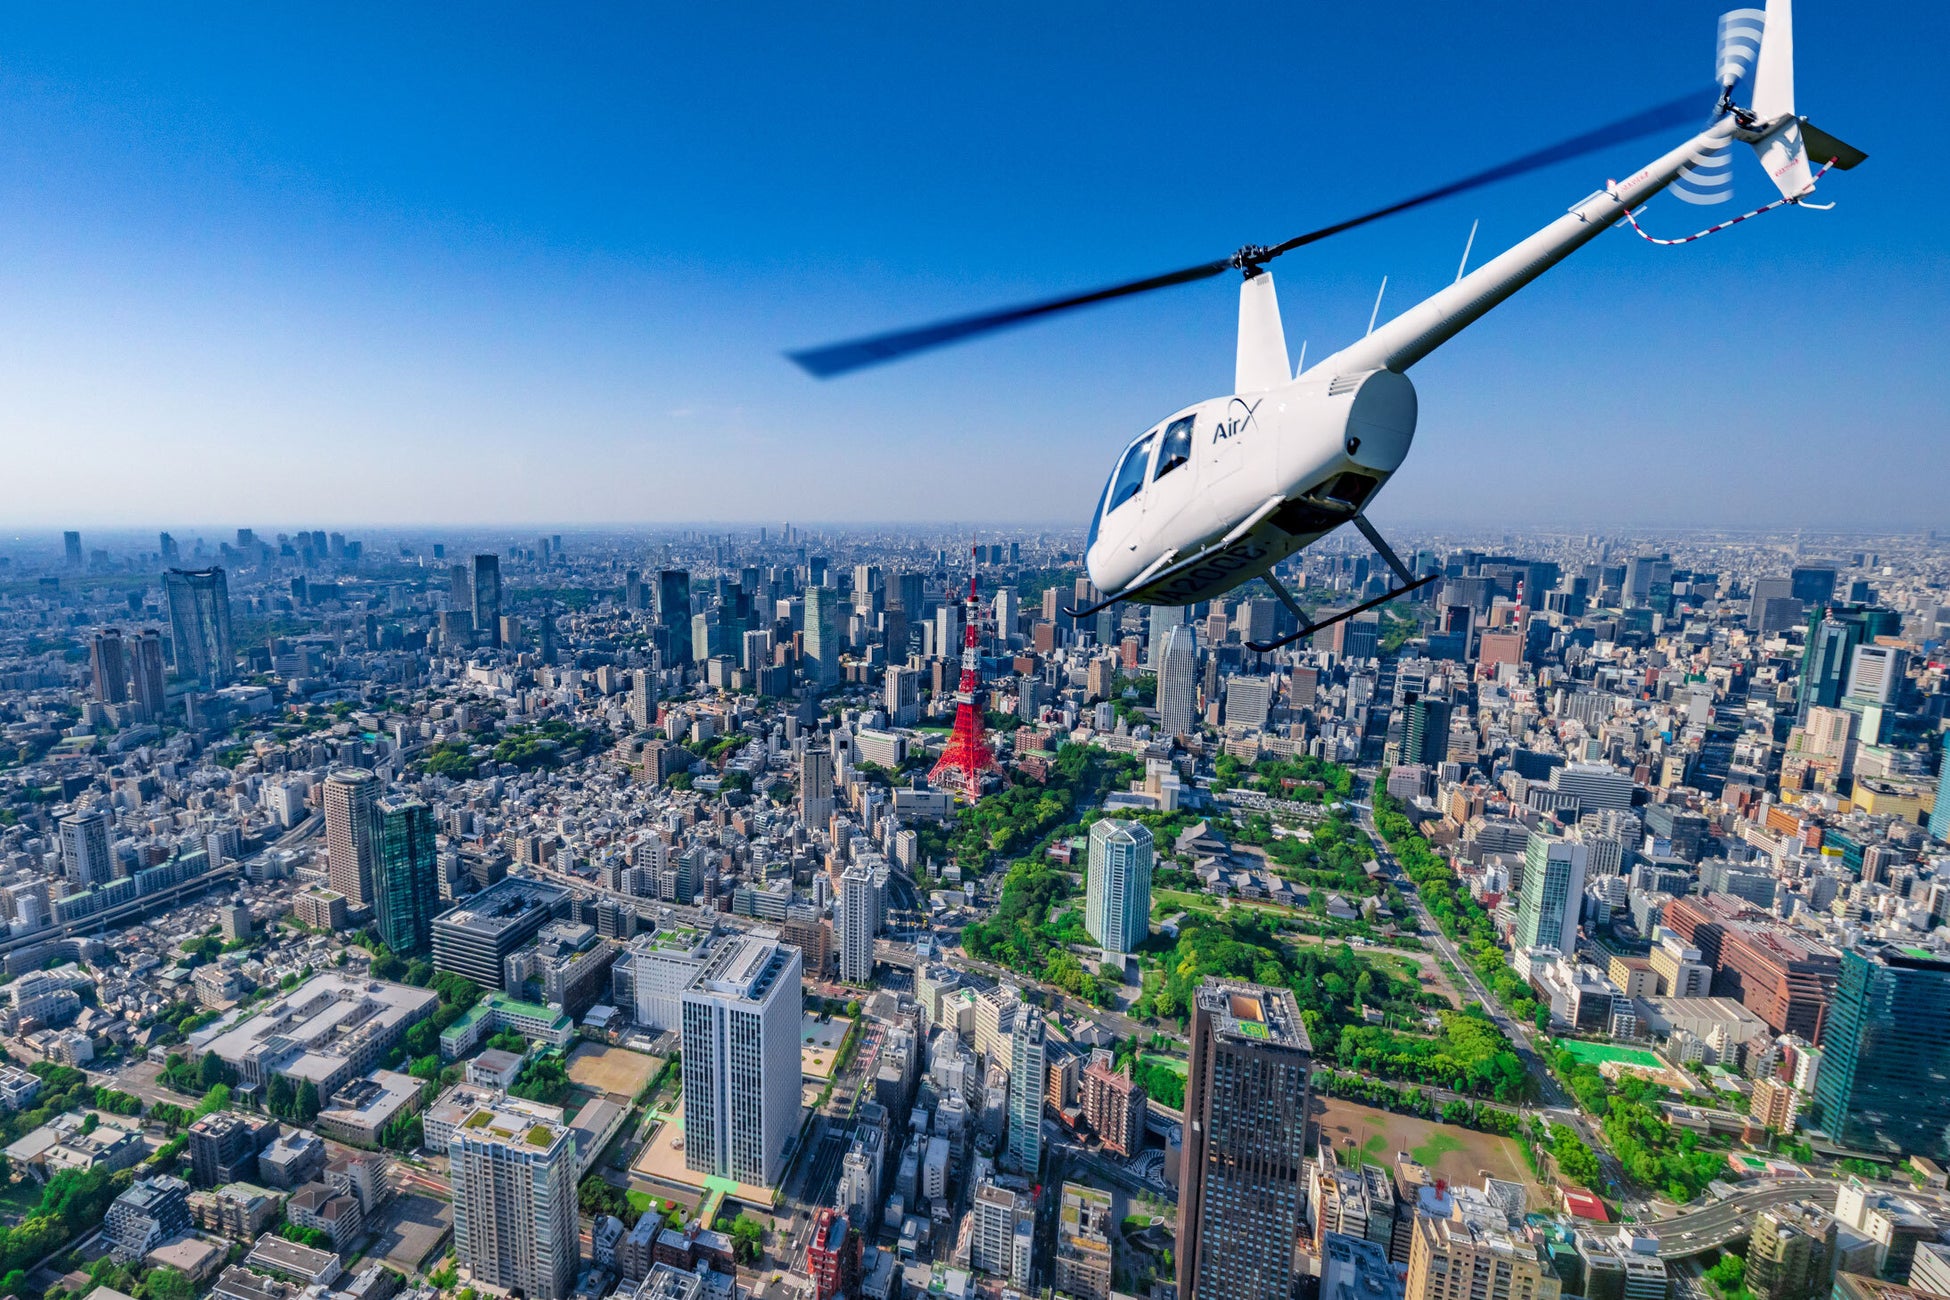 AirX、「モビリティマーケット by KINTO」を通してヘリコプター遊覧プランの販売を開始